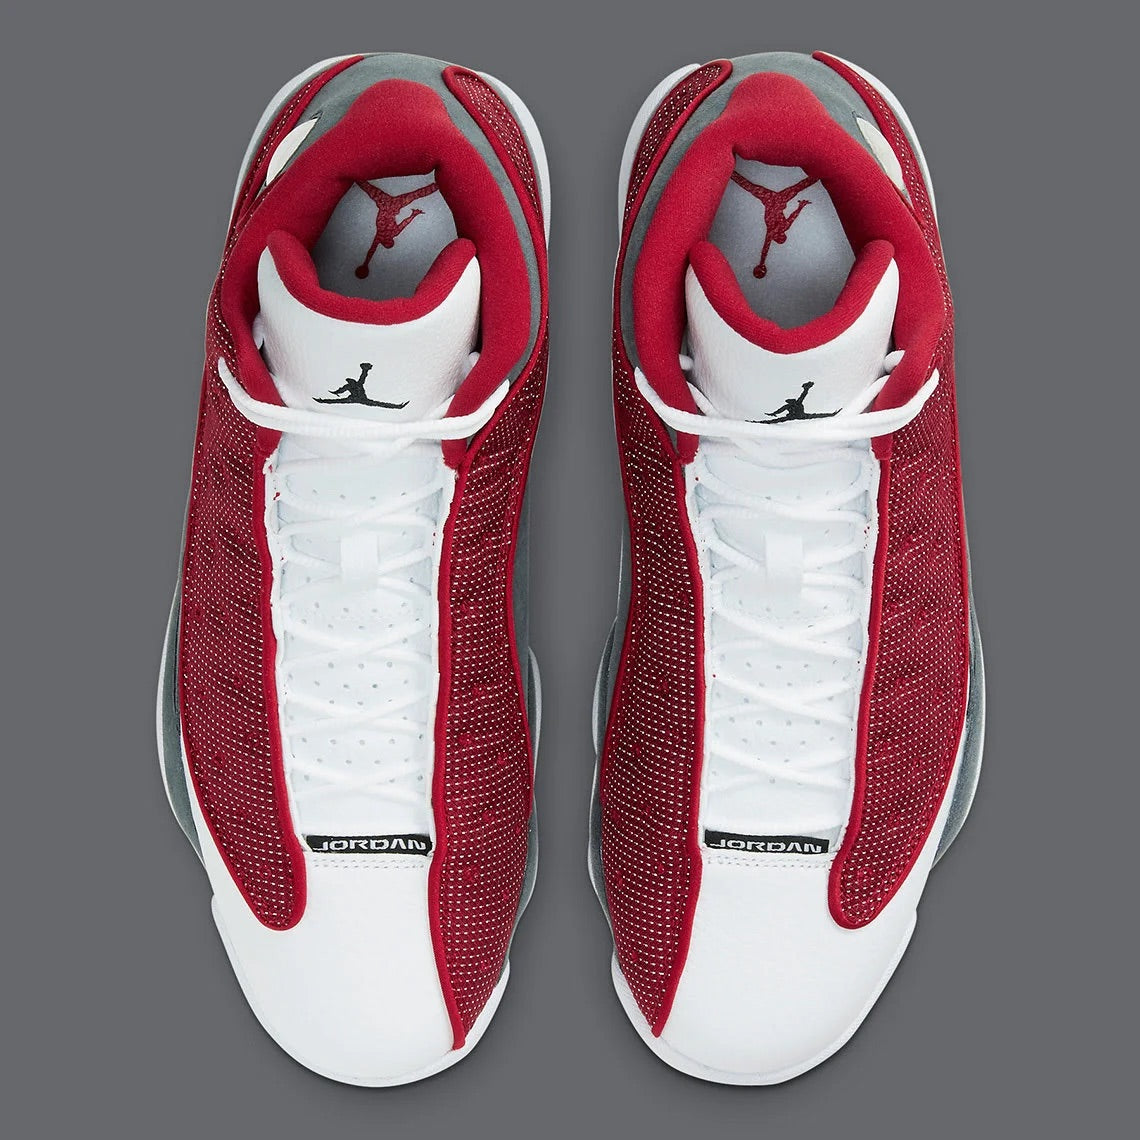 Air Jordan 13 Red Flint First Look & Release Info